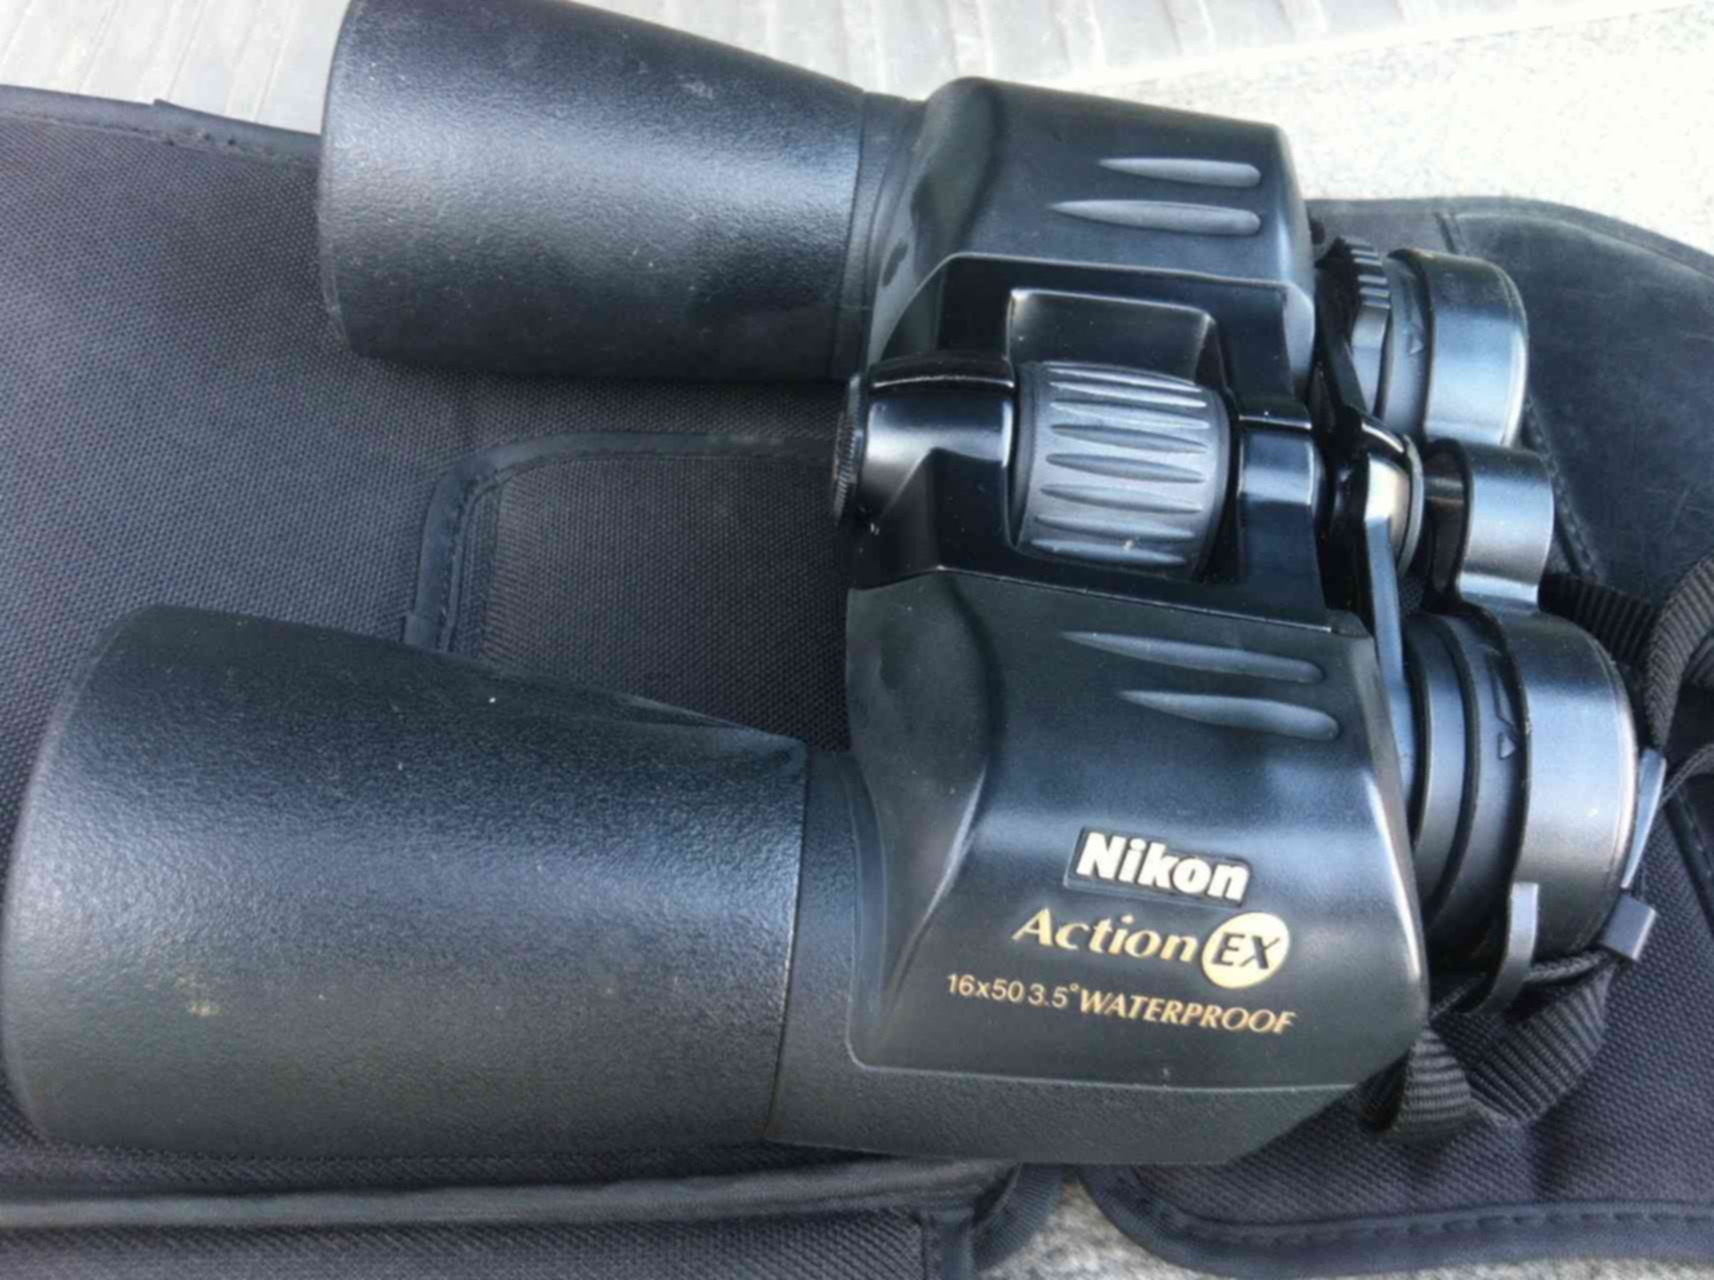 16 action. Бинокль Nikon Action ex wp 16x50 CF. Прибор ночного видения - бинокль Nikon Action ex 16х50мм.